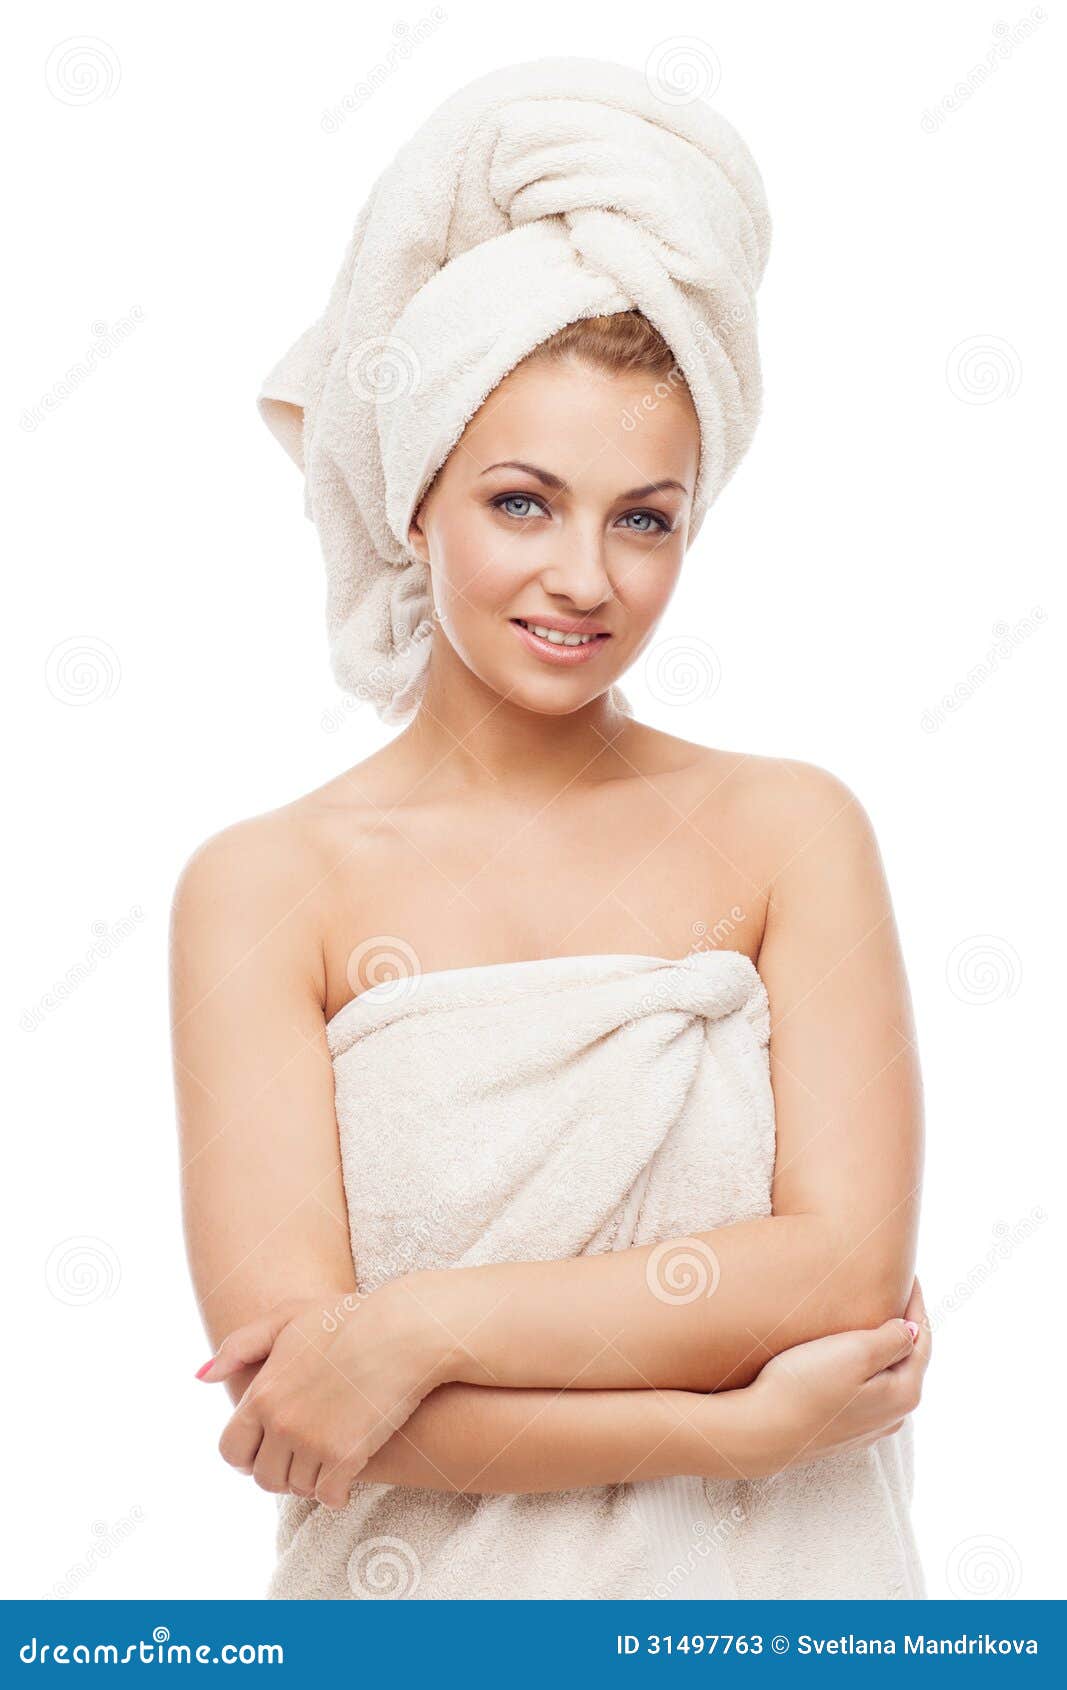 Обернутая полотенцем. Женщина с полотенцем на голове. Голова замотанная в полотенце. Девушка обернутая в полотенце. Девушки обмотаны полотенцем.